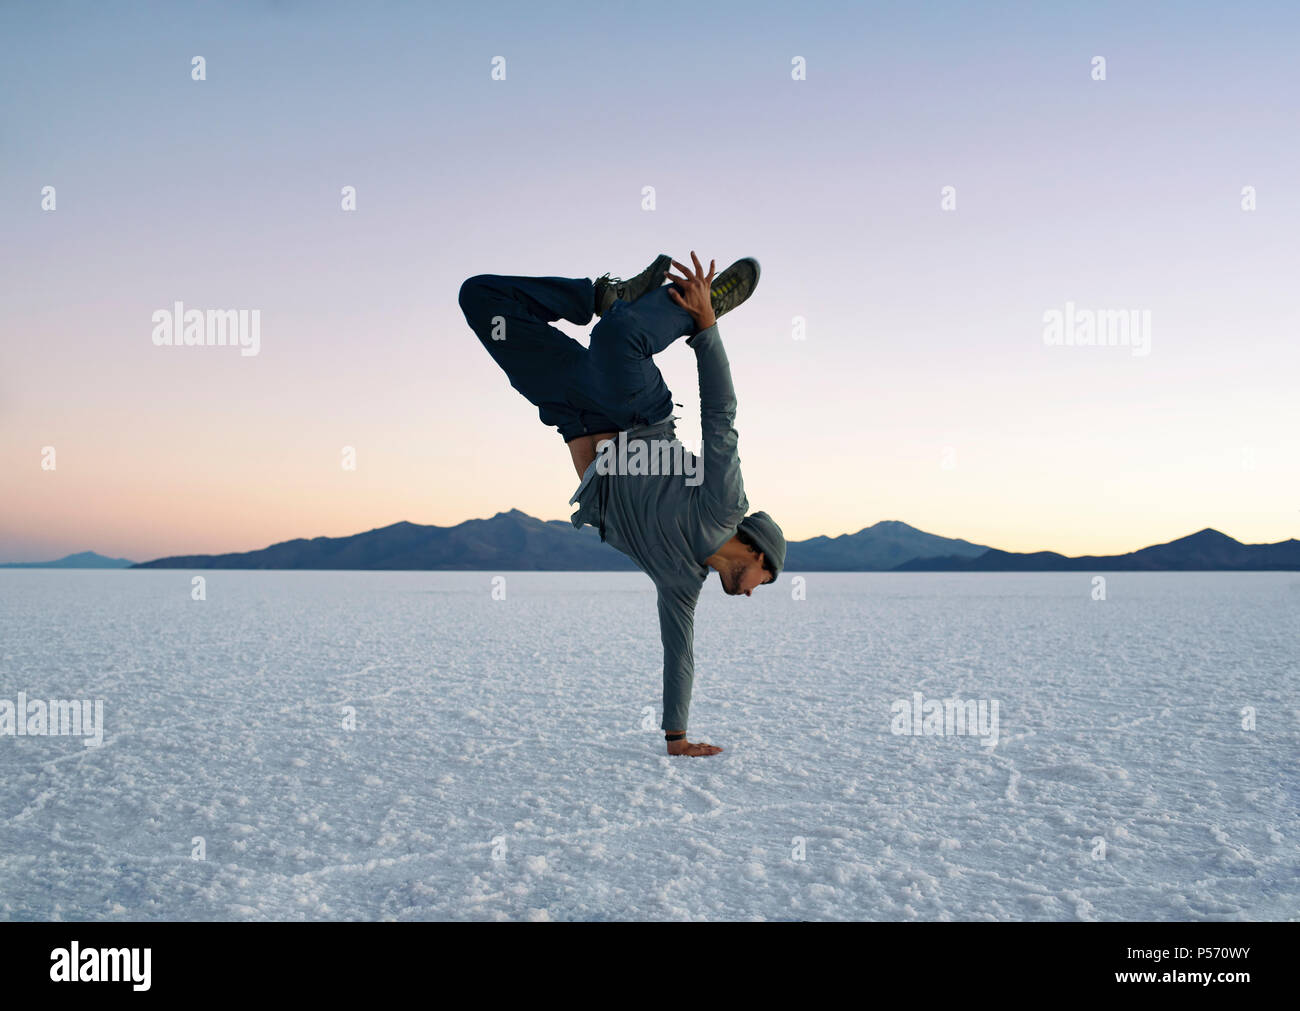 Junge tun einen Arm handstand während des Sonnenuntergangs. Salar de Uyuni (salzsee), Bolivien. Aktiver Lebensstil, Tanz, Fitness, Abenteuer. Jun 2018 Stockfoto